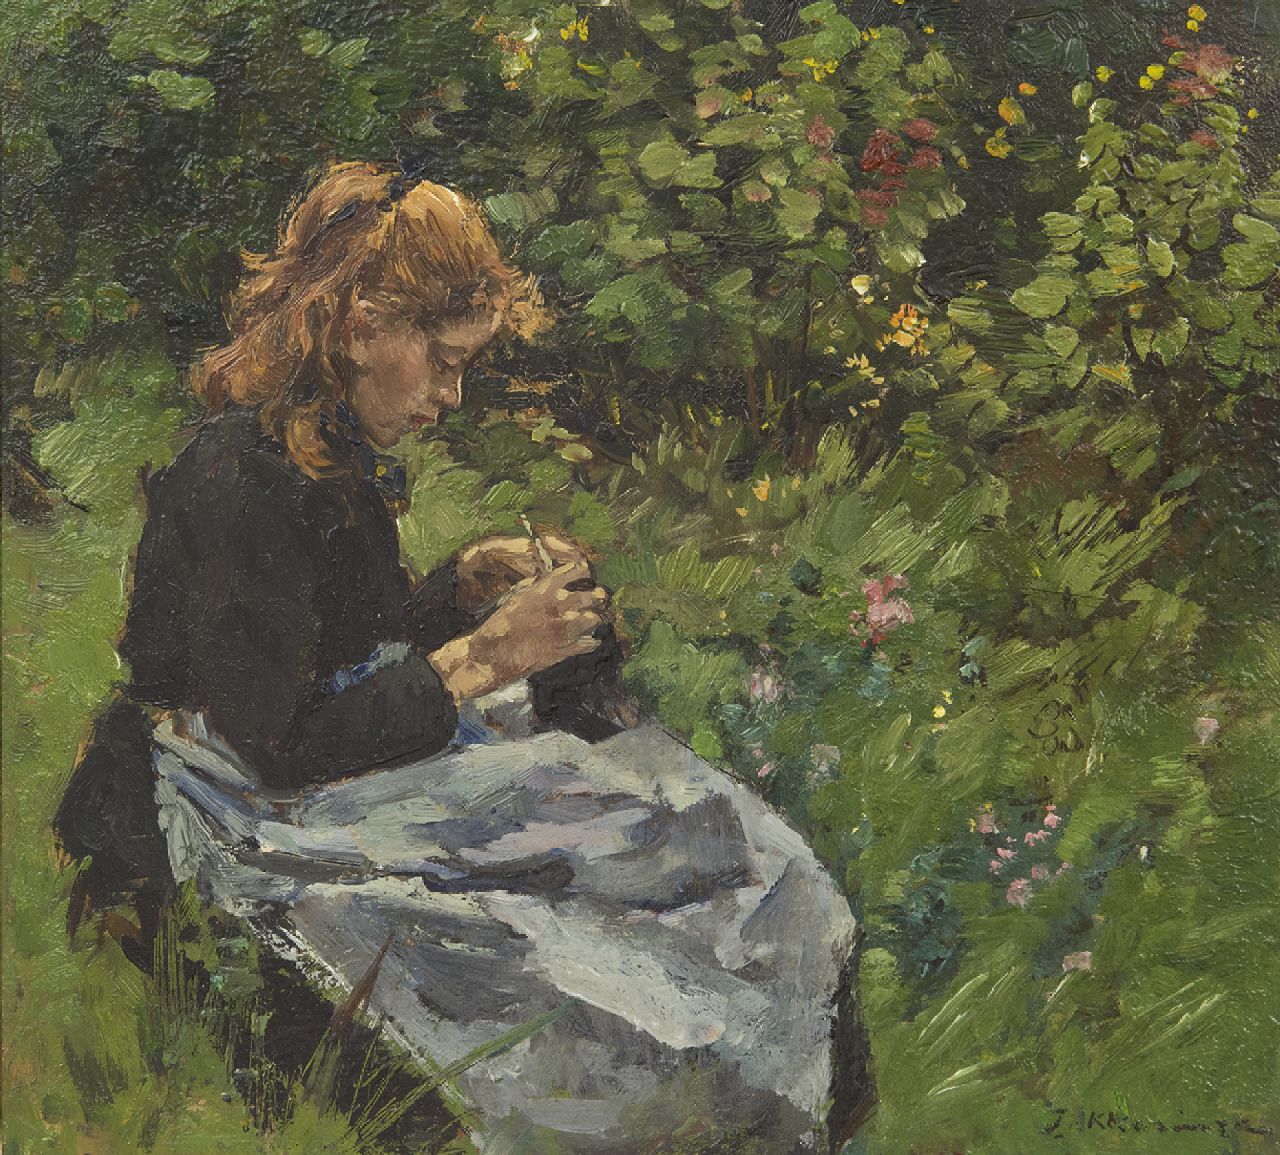 Akkeringa J.E.H.  | 'Johannes Evert' Hendrik Akkeringa, Breiend meisje in de tuin, olieverf op paneel 23,6 x 25,7 cm, gesigneerd rechtsonder